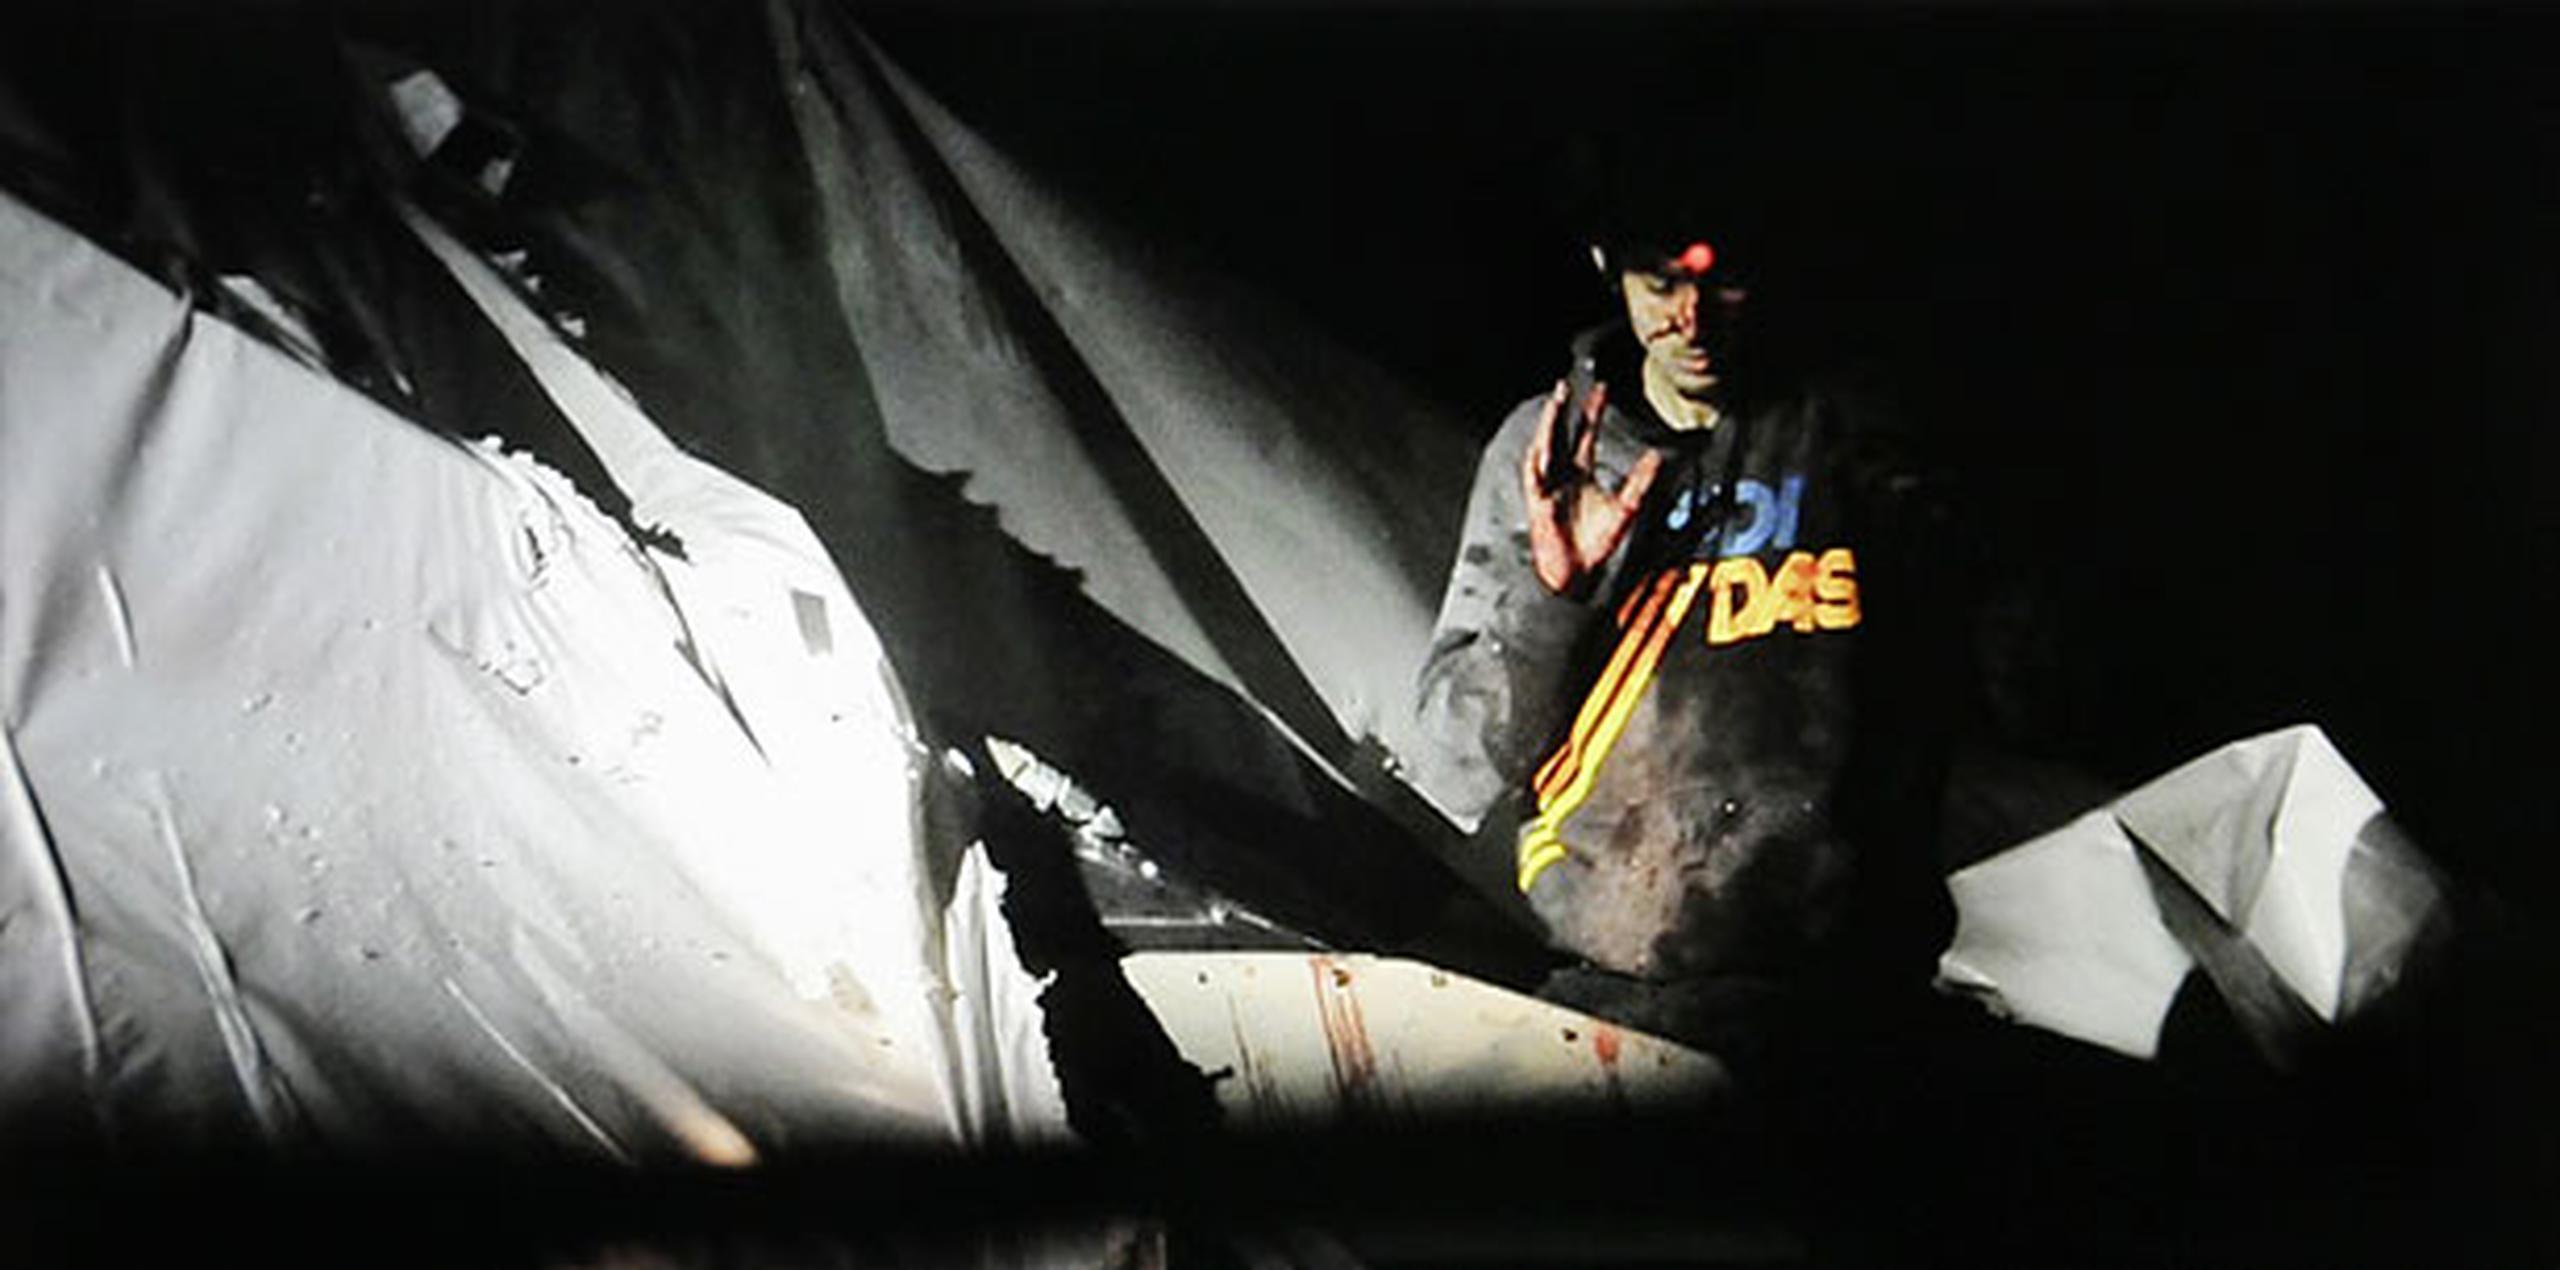 La primera publicación se produjo en la revista "Boston Magazine", donde se puede ver a Tsarnaev con abundante sangre en la cabeza y un punto láser en la frente que lo marca como objetivo de un francotirador policial, al salir del barco donde estuvo escondido durante horas en la localidad de Watermelon, a las afueras de Boston. (AP)